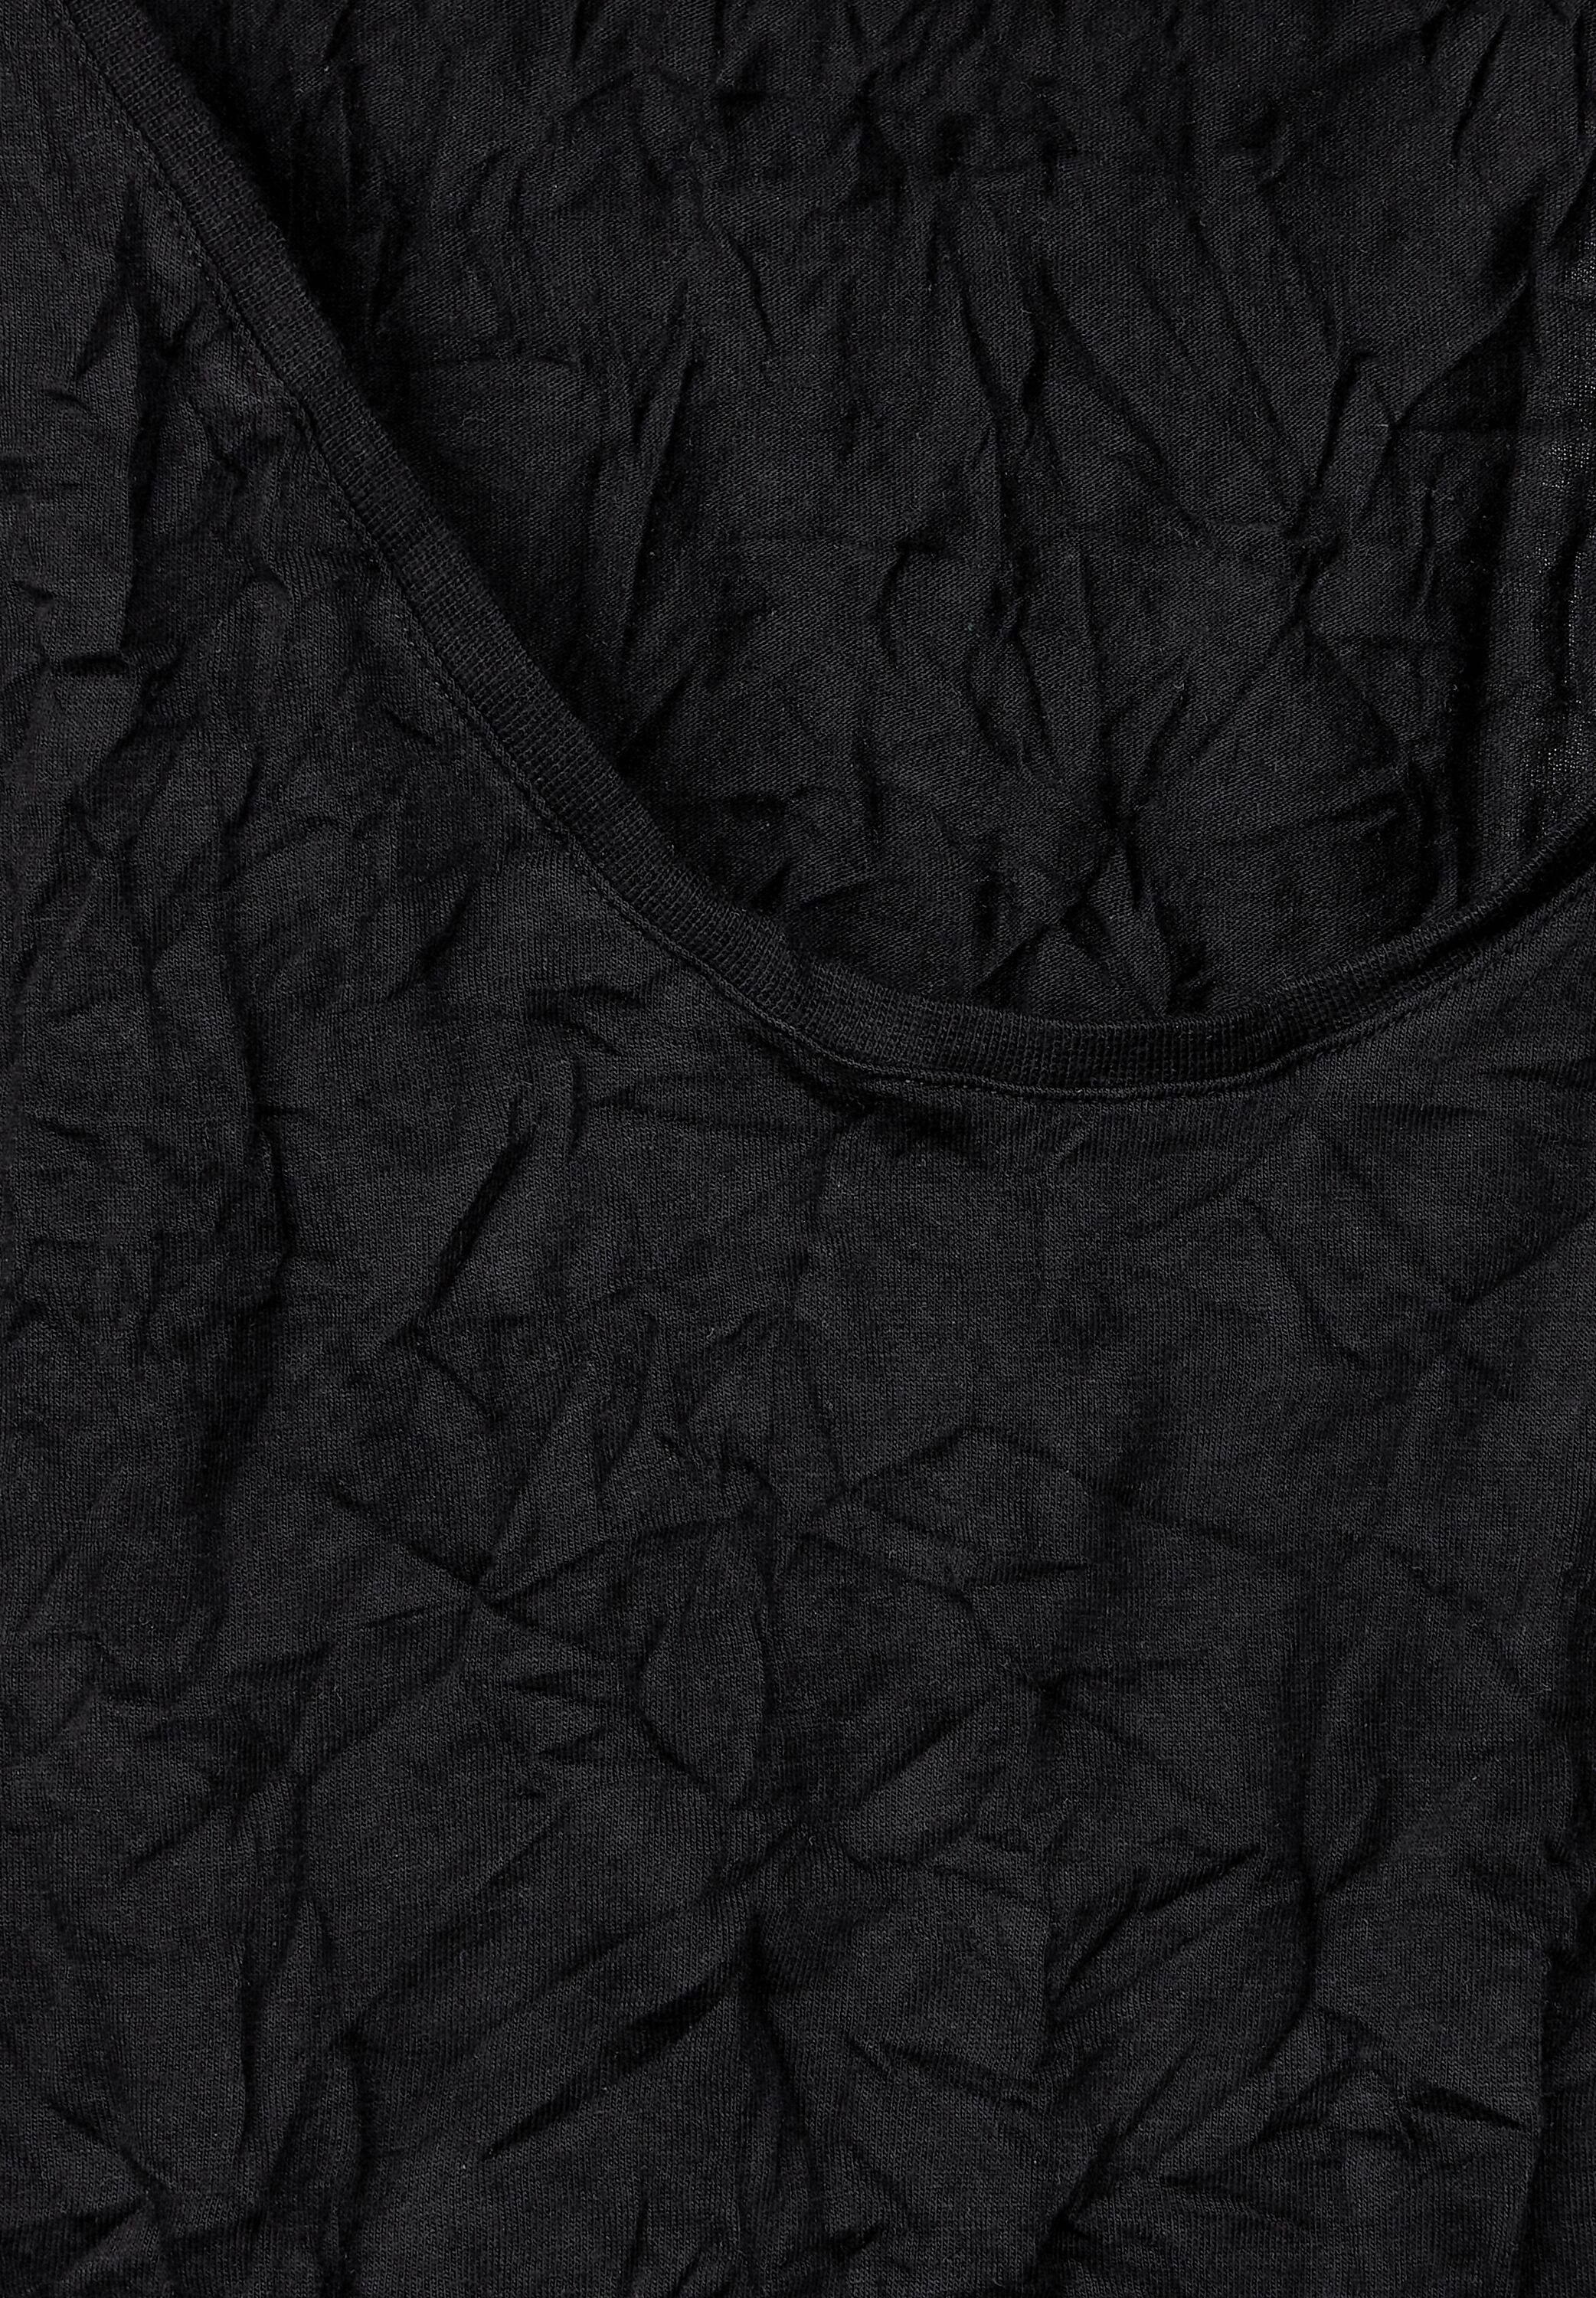 STREET ONE T-Shirt softem Black Materialmix aus